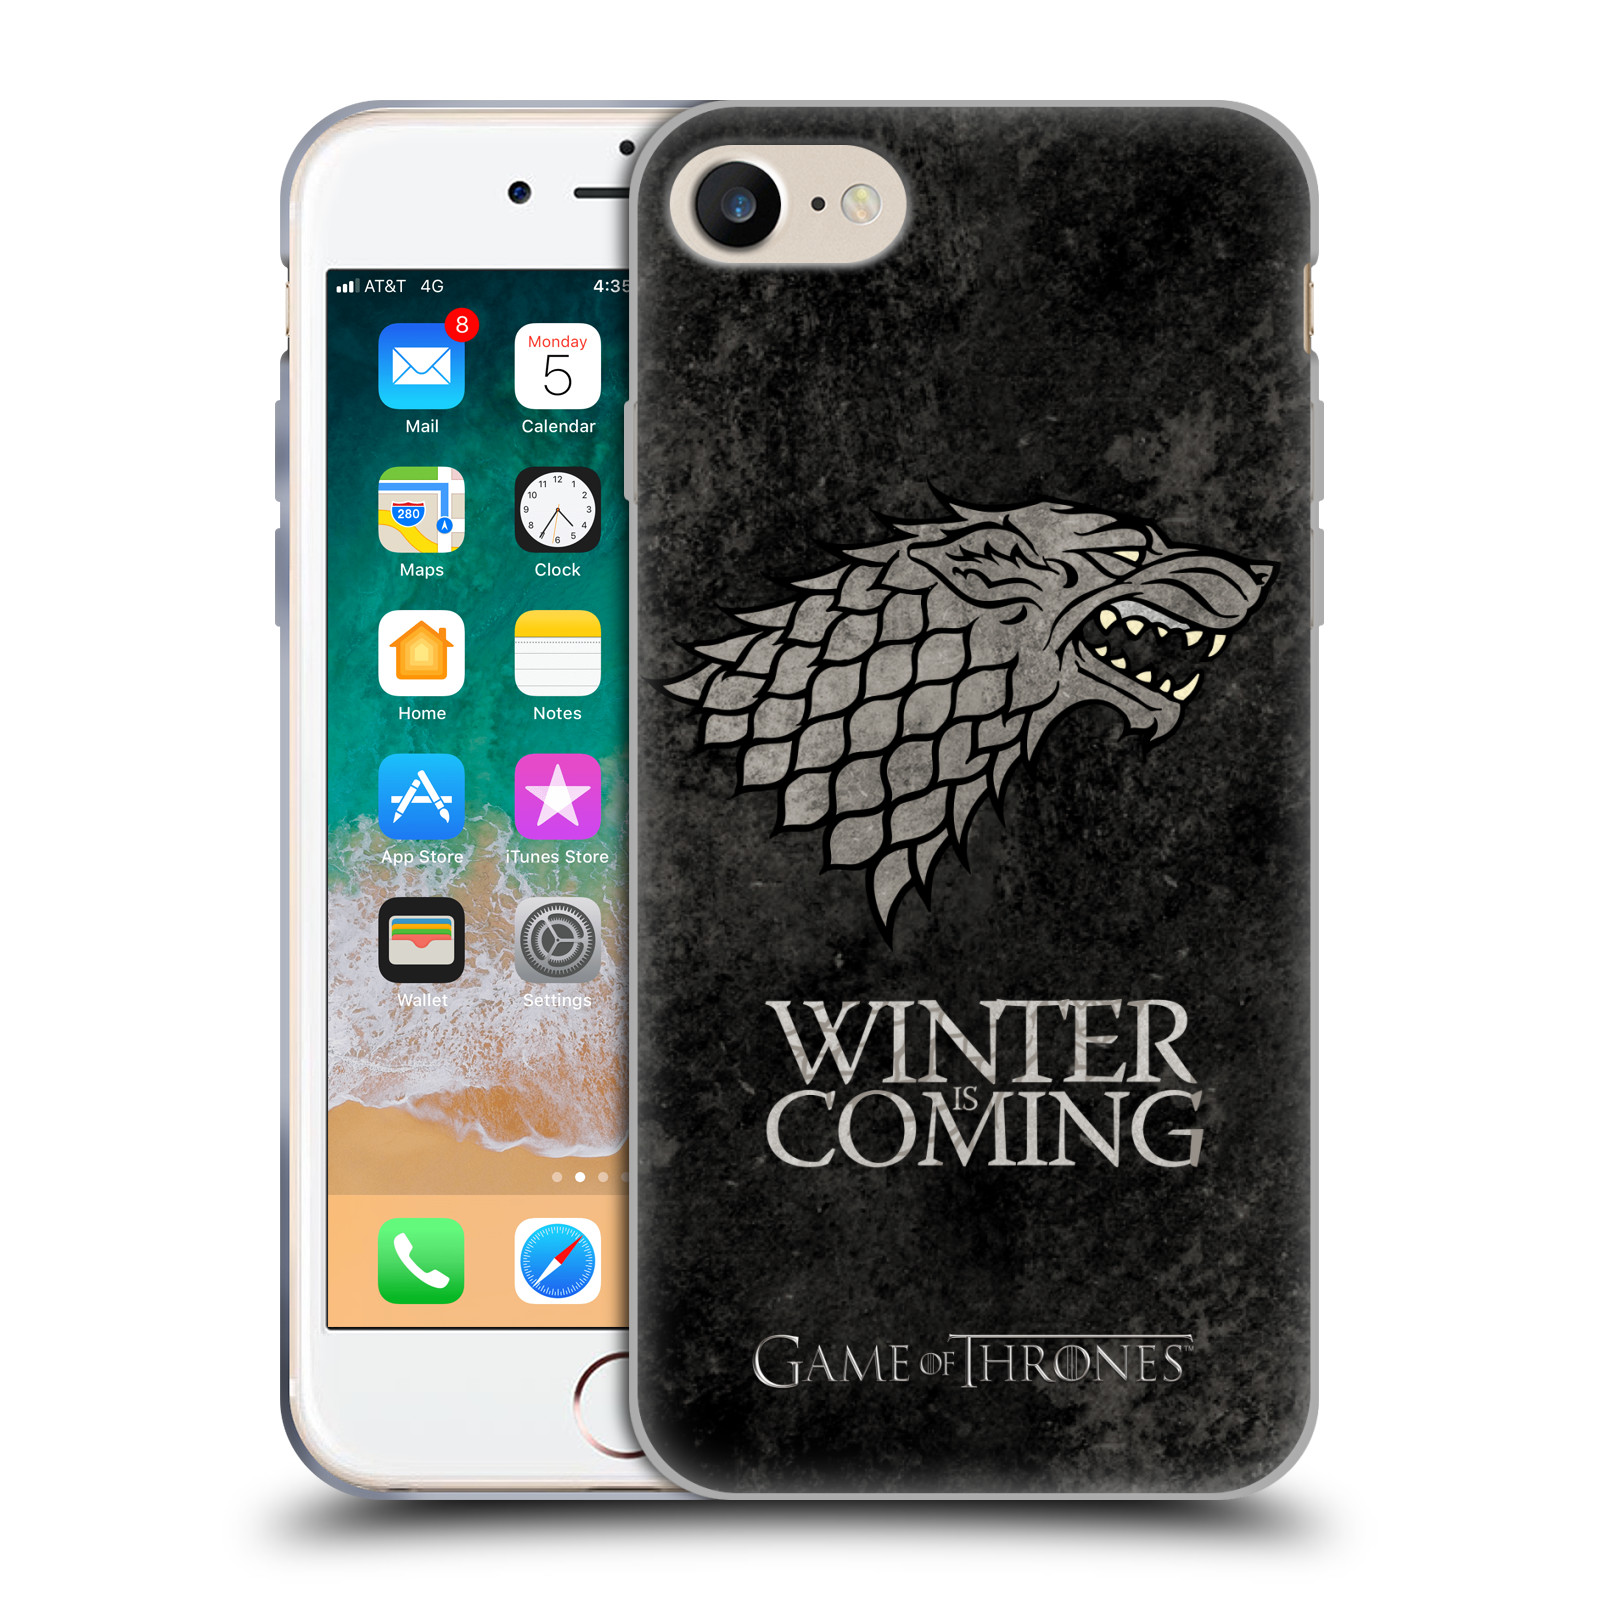 Silikonové pouzdro na mobil Apple iPhone 7 HEAD CASE Hra o trůny - Stark - Winter is coming (Silikonový kryt či obal na mobilní telefon s licencovaným motivem Hra o trůny / Game Of Thrones pro Apple iPhone 7)